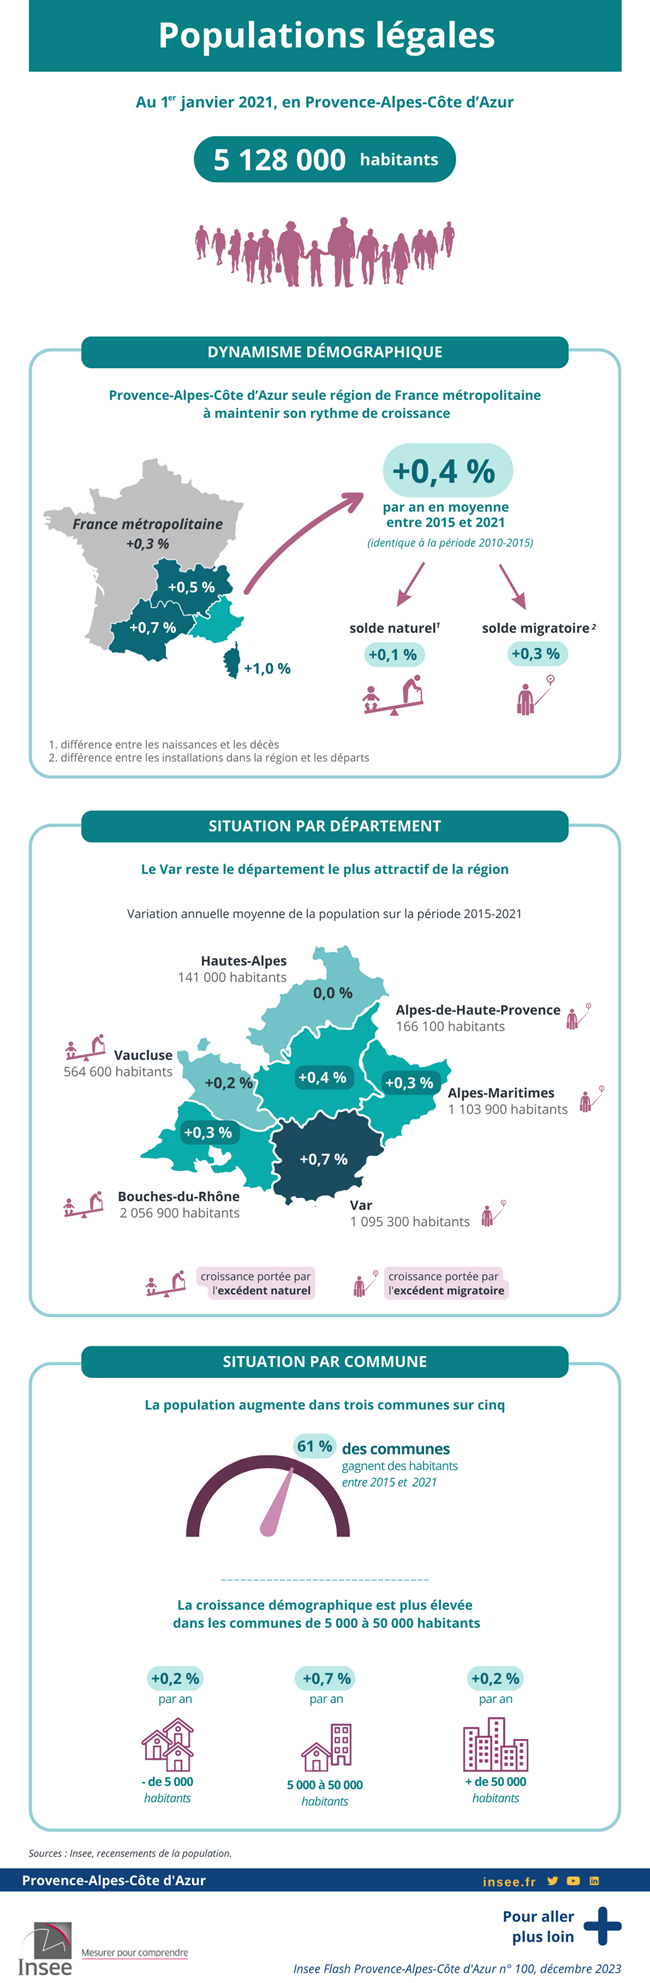 Populations légales : 5 128 000 habitants en Provence-Alpes-Côte d’Azur au 1ᵉʳ janvier 2021.